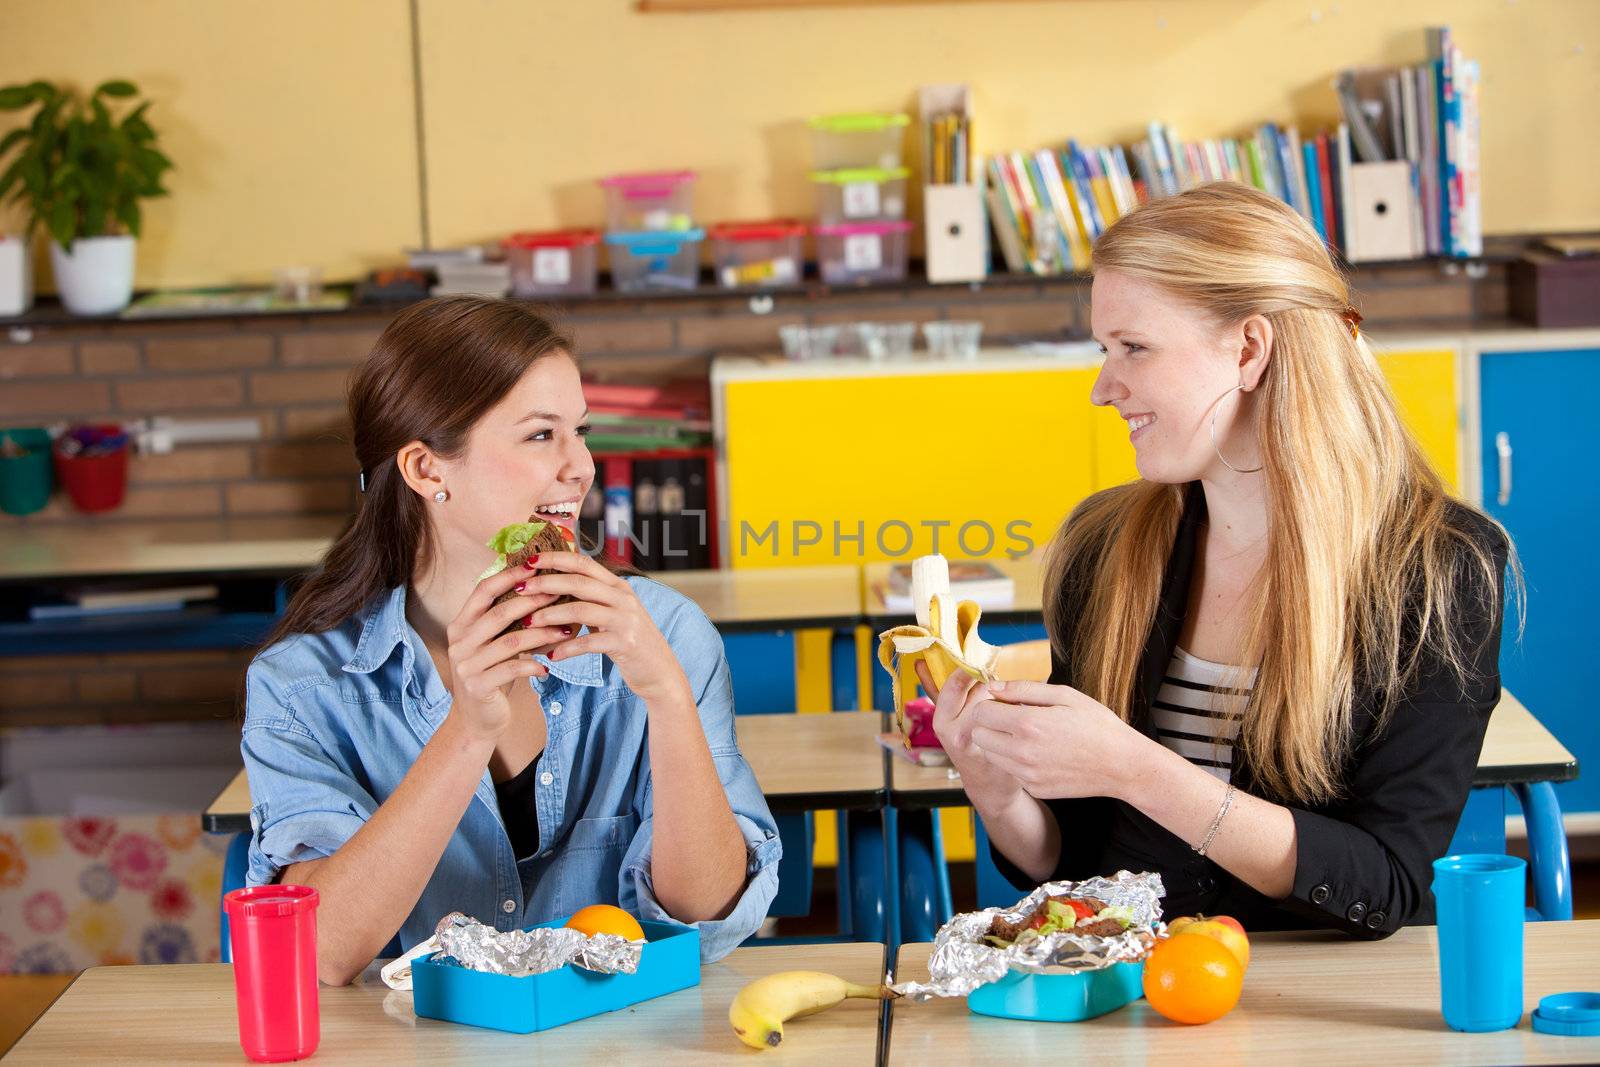 Healthy school lunch by Fotosmurf